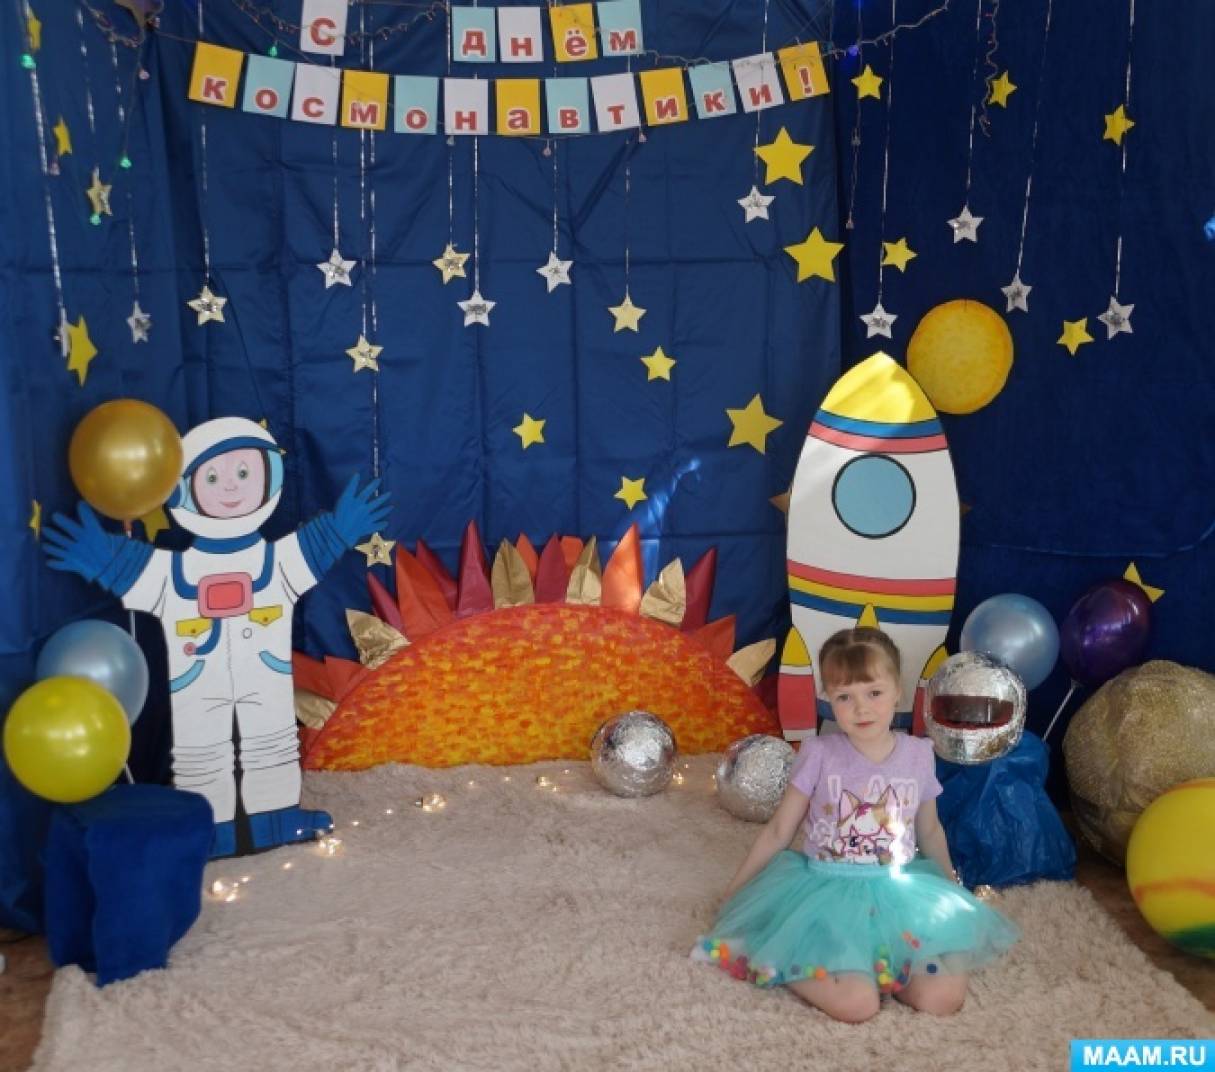 Оформление к дню космонавтики в детском саду. Фотозона космос в детском саду. Фото зона ко Дню космонавтики в детском саду. Фотозона на день космонавтики в детском саду. Оформление фотозоны космос в детском саду.